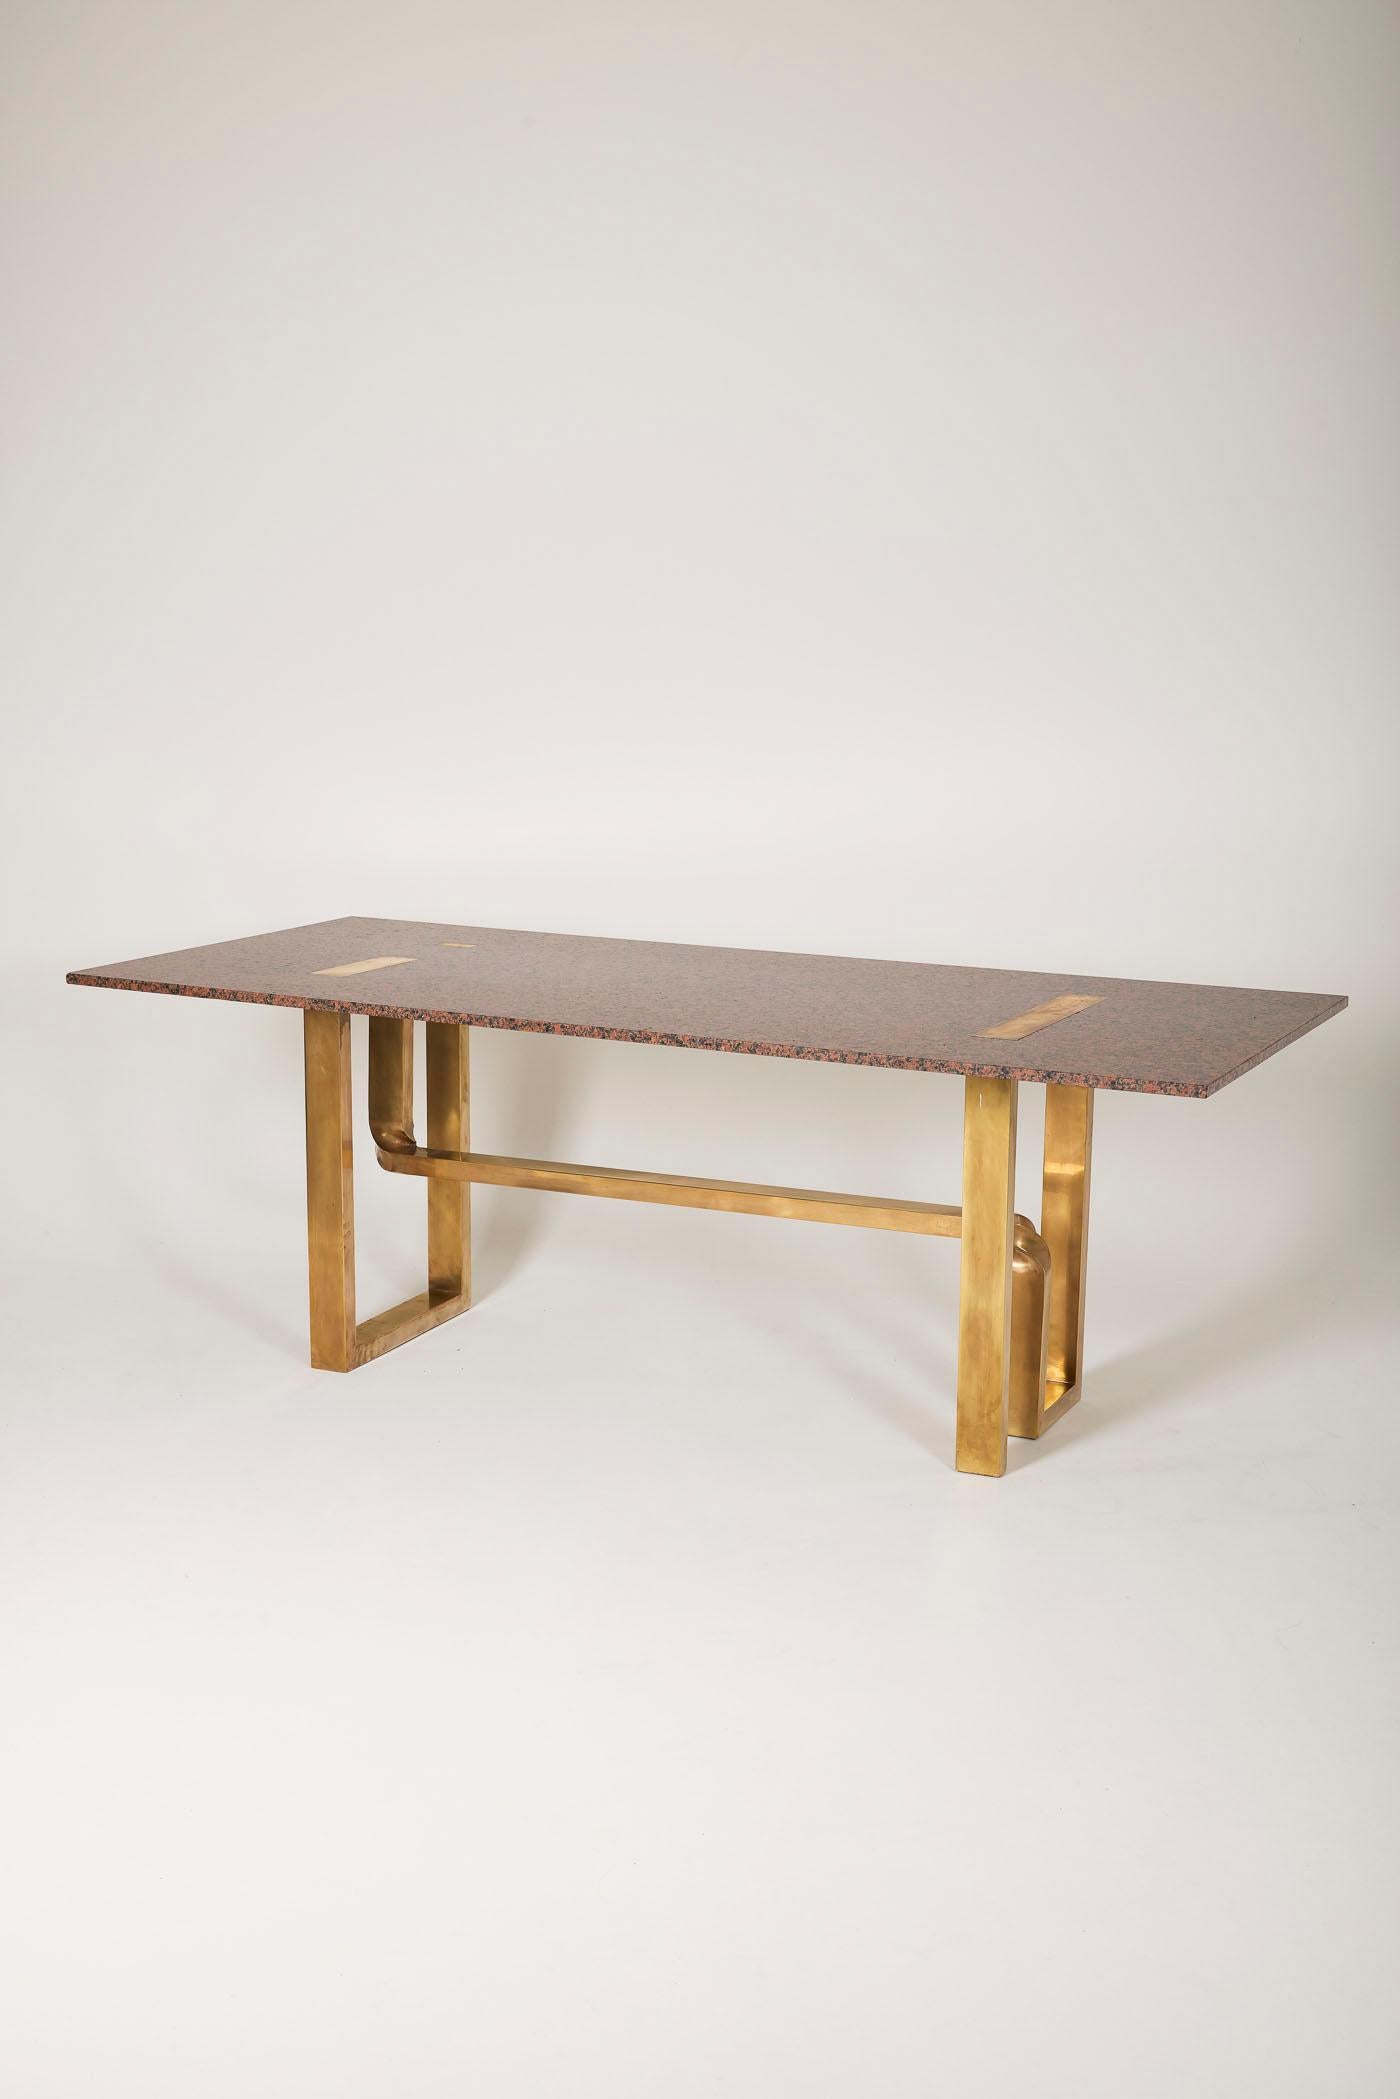 Großer Tisch des Designers Alfredo Freda für Cittone Oggi. Die Tischplatte ist aus rosafarbenem Granit, der Sockel aus Bronze mit gedrehten Armen. In gutem Zustand.
DV121